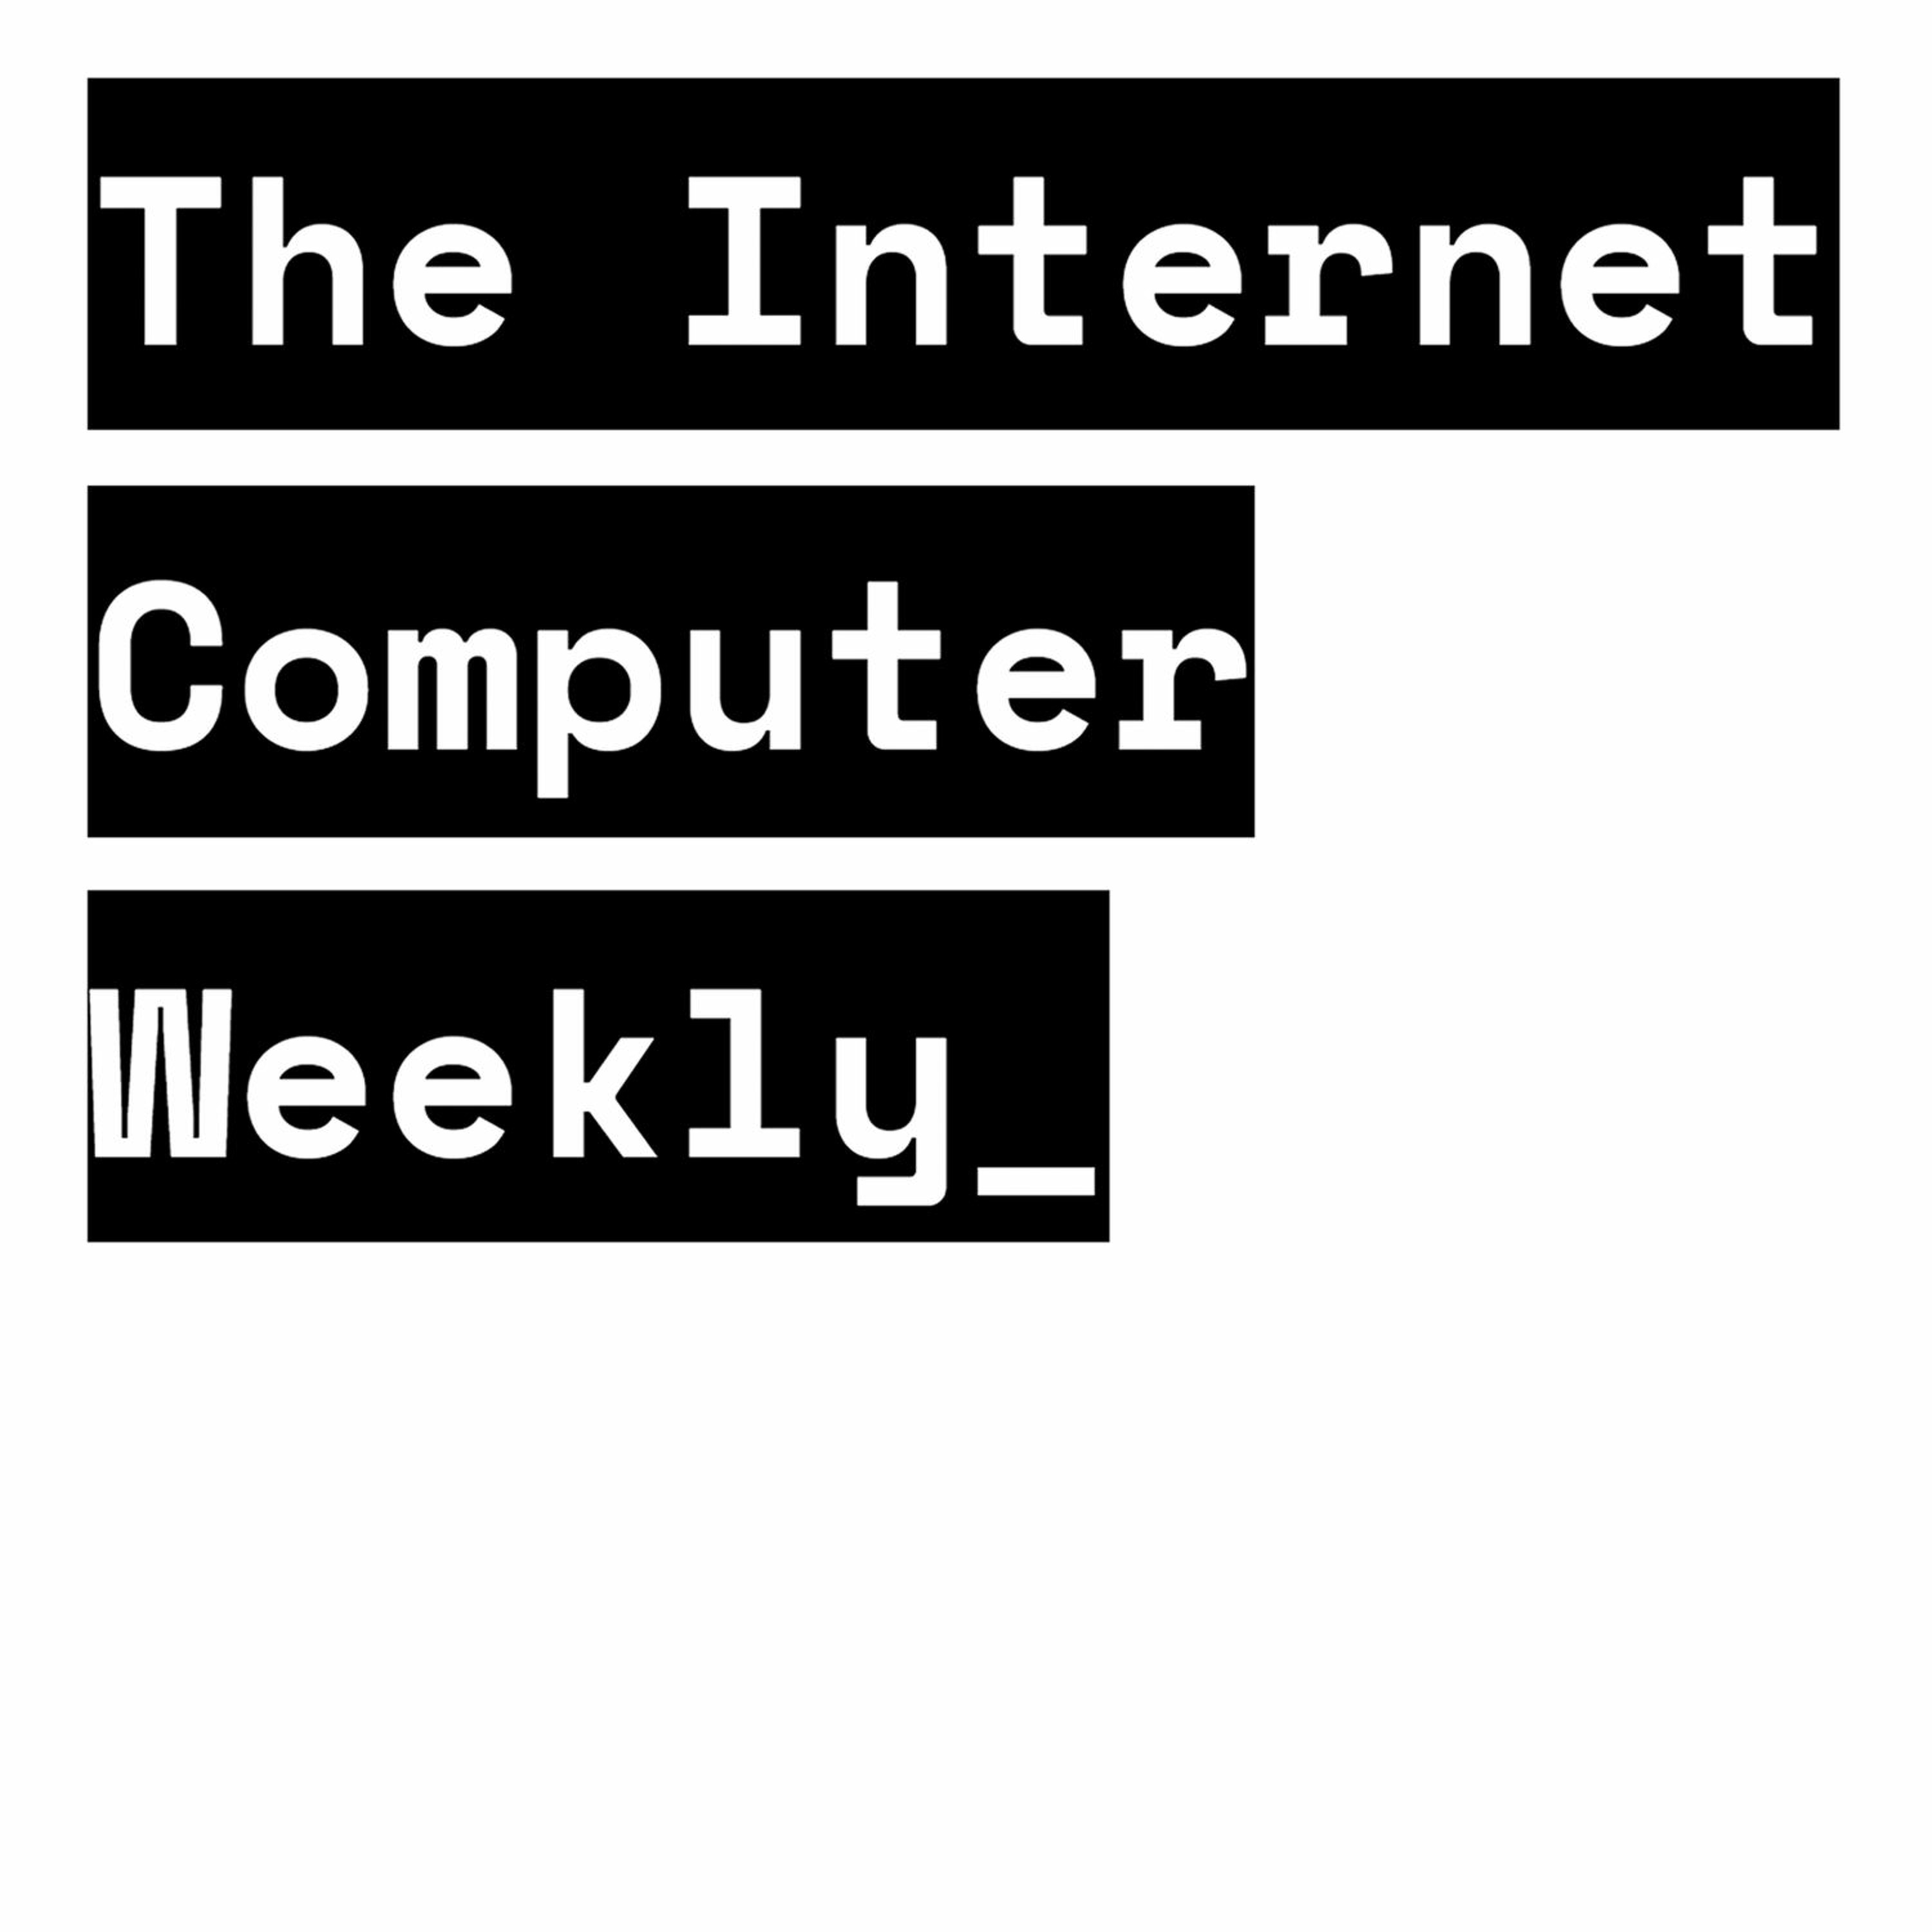 The Internet Computer Weekly - Decentralised Web On Fleek